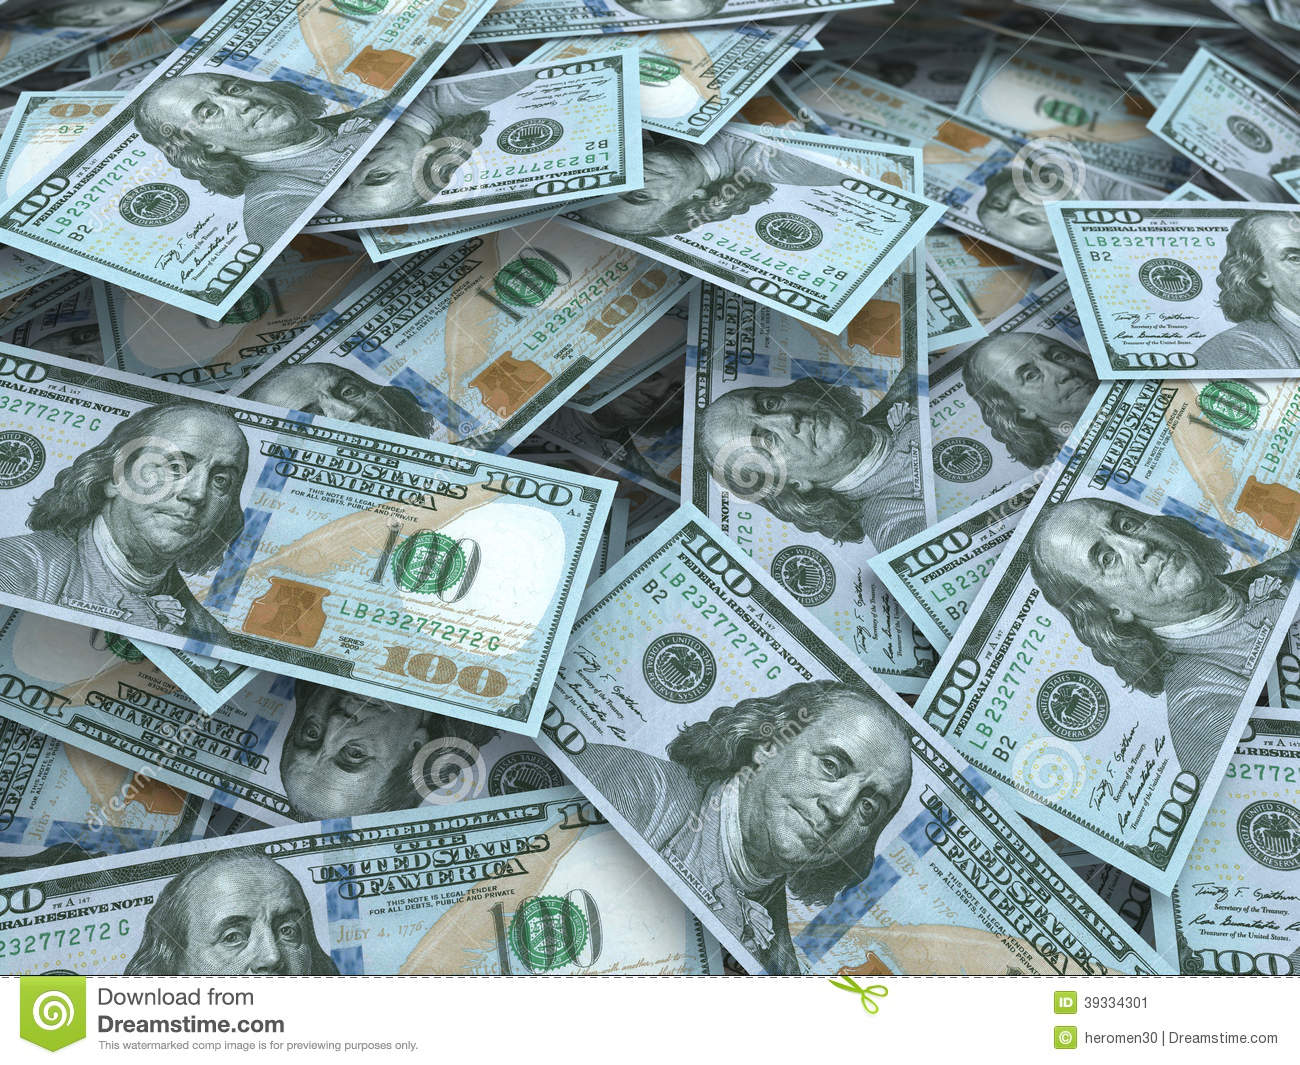 fondo de pantalla de billete de 100 dólares,dinero,efectivo,billete de banco,dólar,manejo de dinero